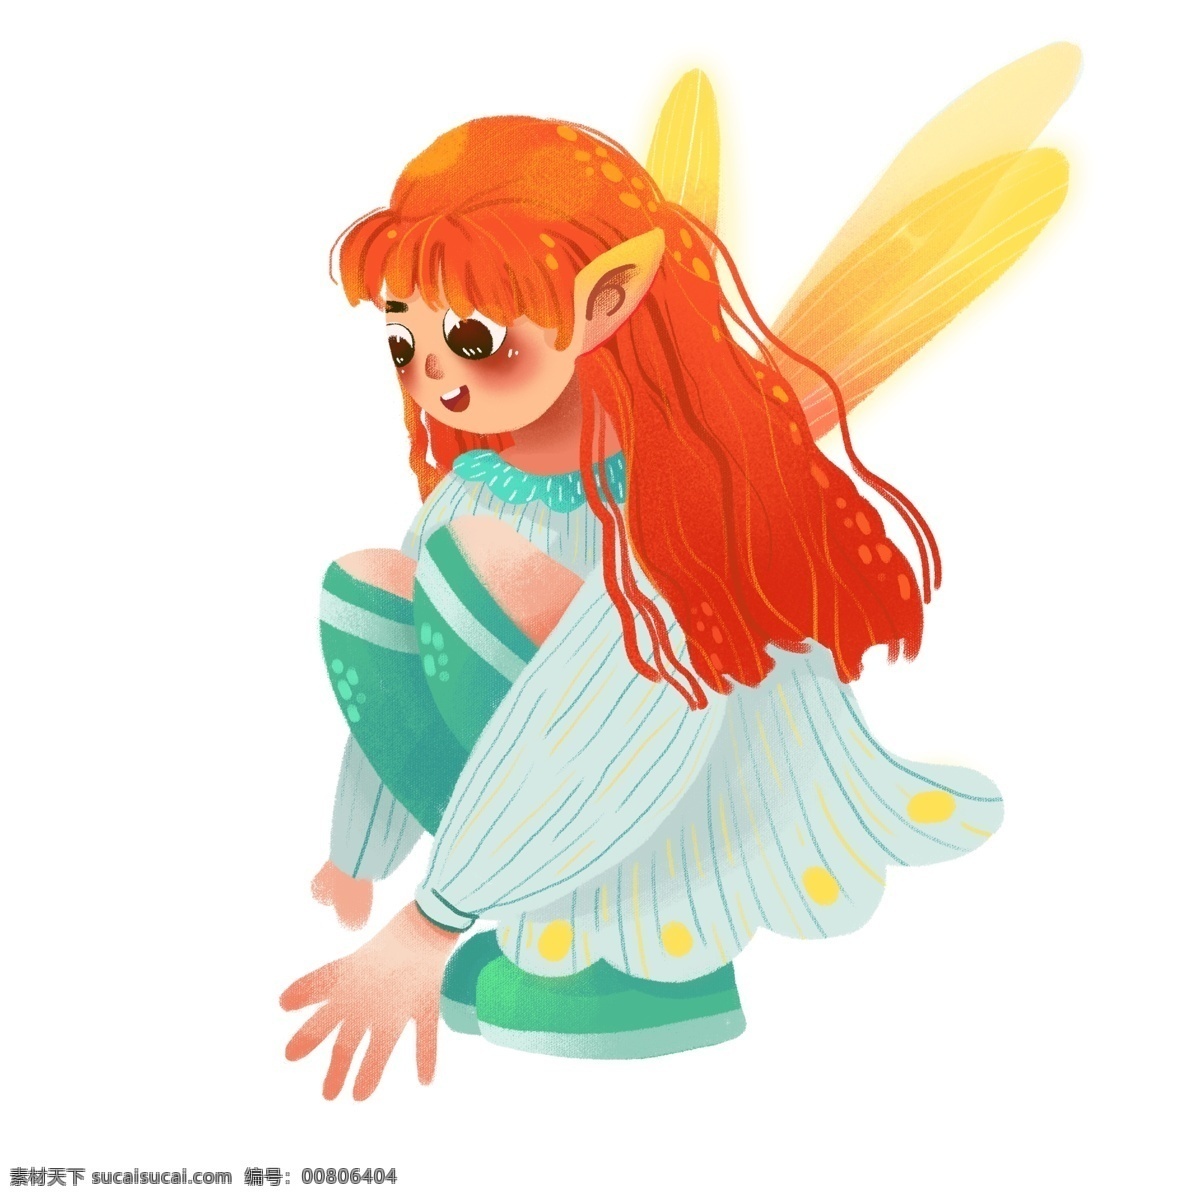 橙色 头发 的卡 通 蝴蝶 精灵 蝴蝶精灵 猫的耳朵 飞舞的翅膀 绿色的裙子 橙色的头发 可爱